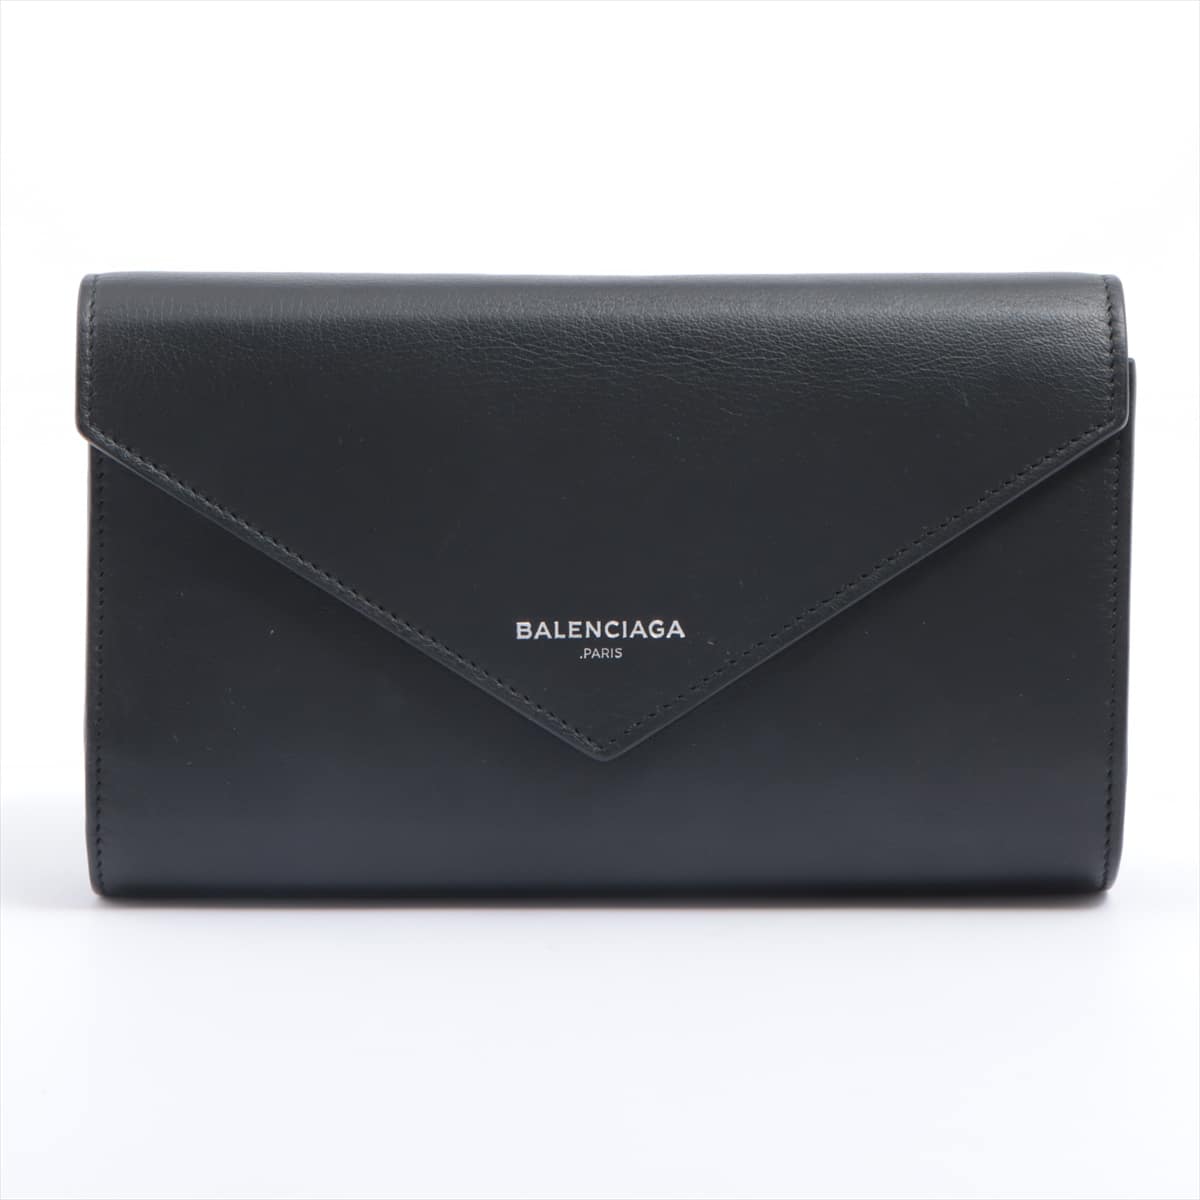 Balenciaga Papier Money 371661 Leather Wallet Black